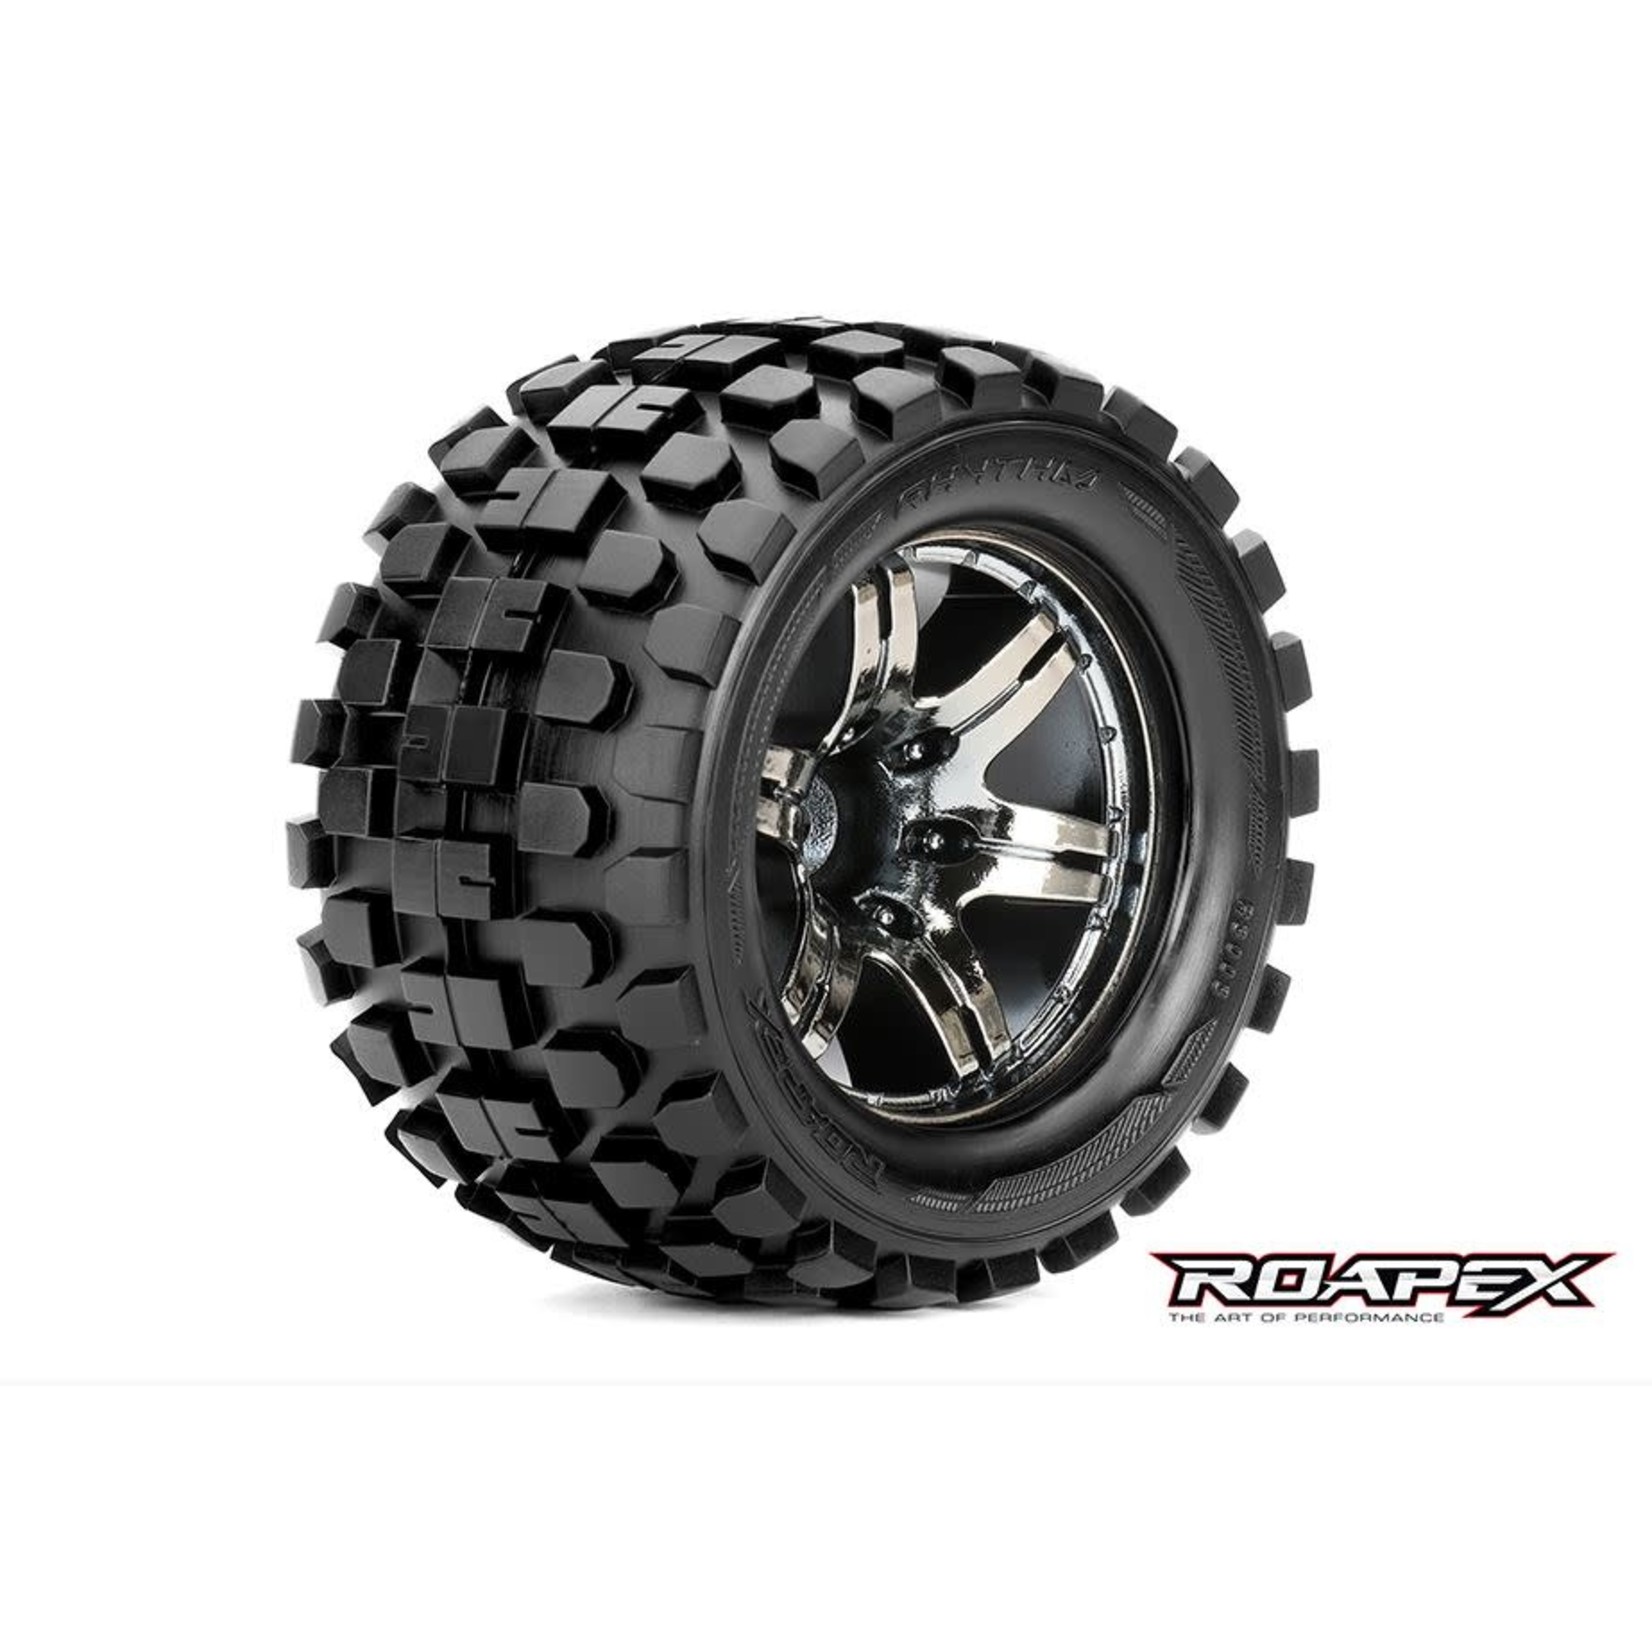 Roapex R/C Rythm 1/10 Monster Truck Tires, Mounted on Chrome Black Wheels, 0 Offset, 12mm Hex (1 pair)